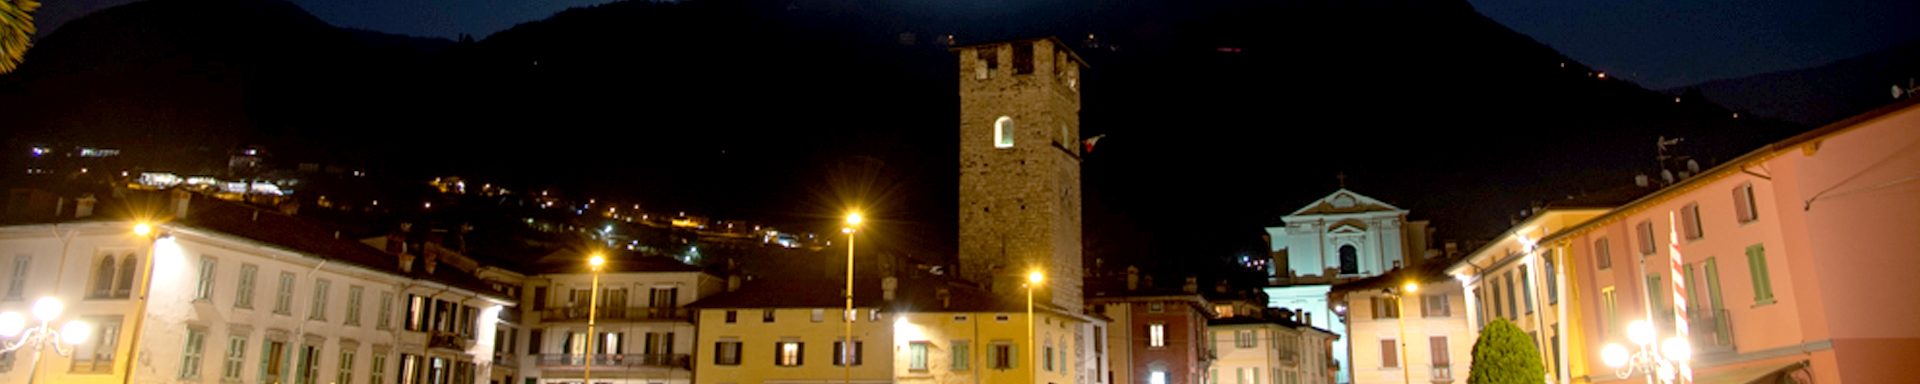 Veduta notturna della Piazza Umberto I con vista della Torre del Vescovo e in lontananza la Chiesa di Santa Maria Assunta